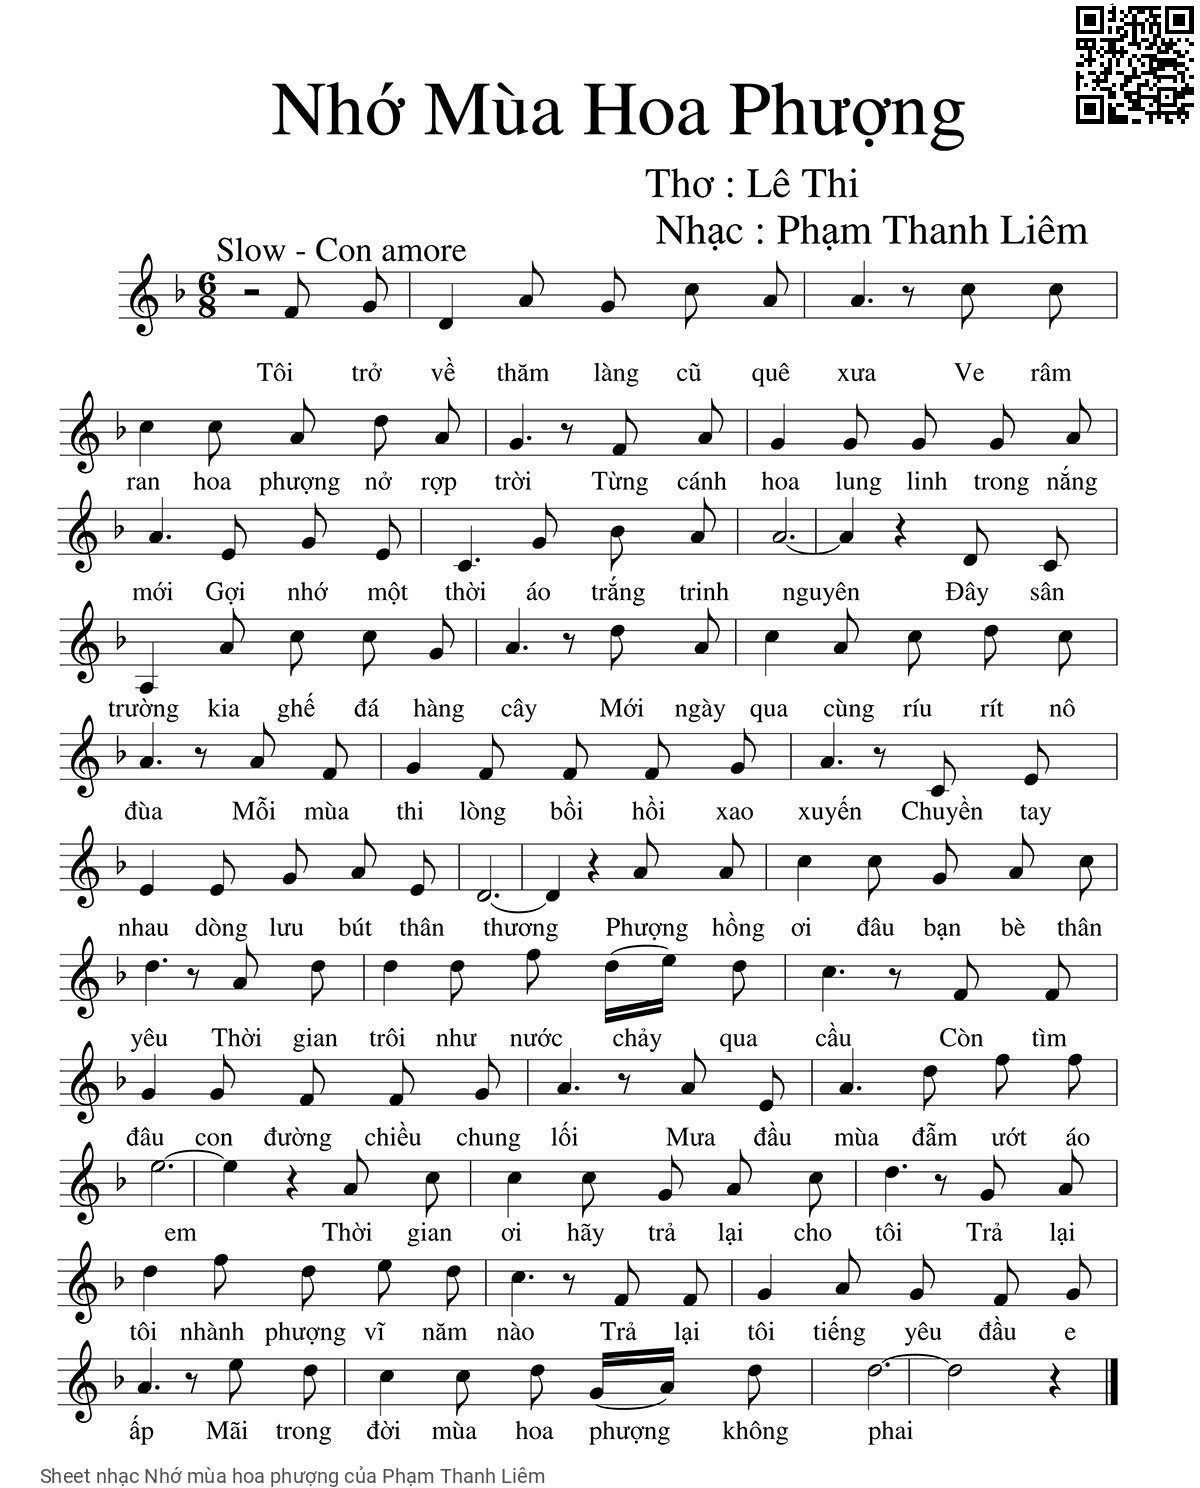 Sheet nhạc Nhớ mùa hoa phượng - Phạm Thanh Liêm